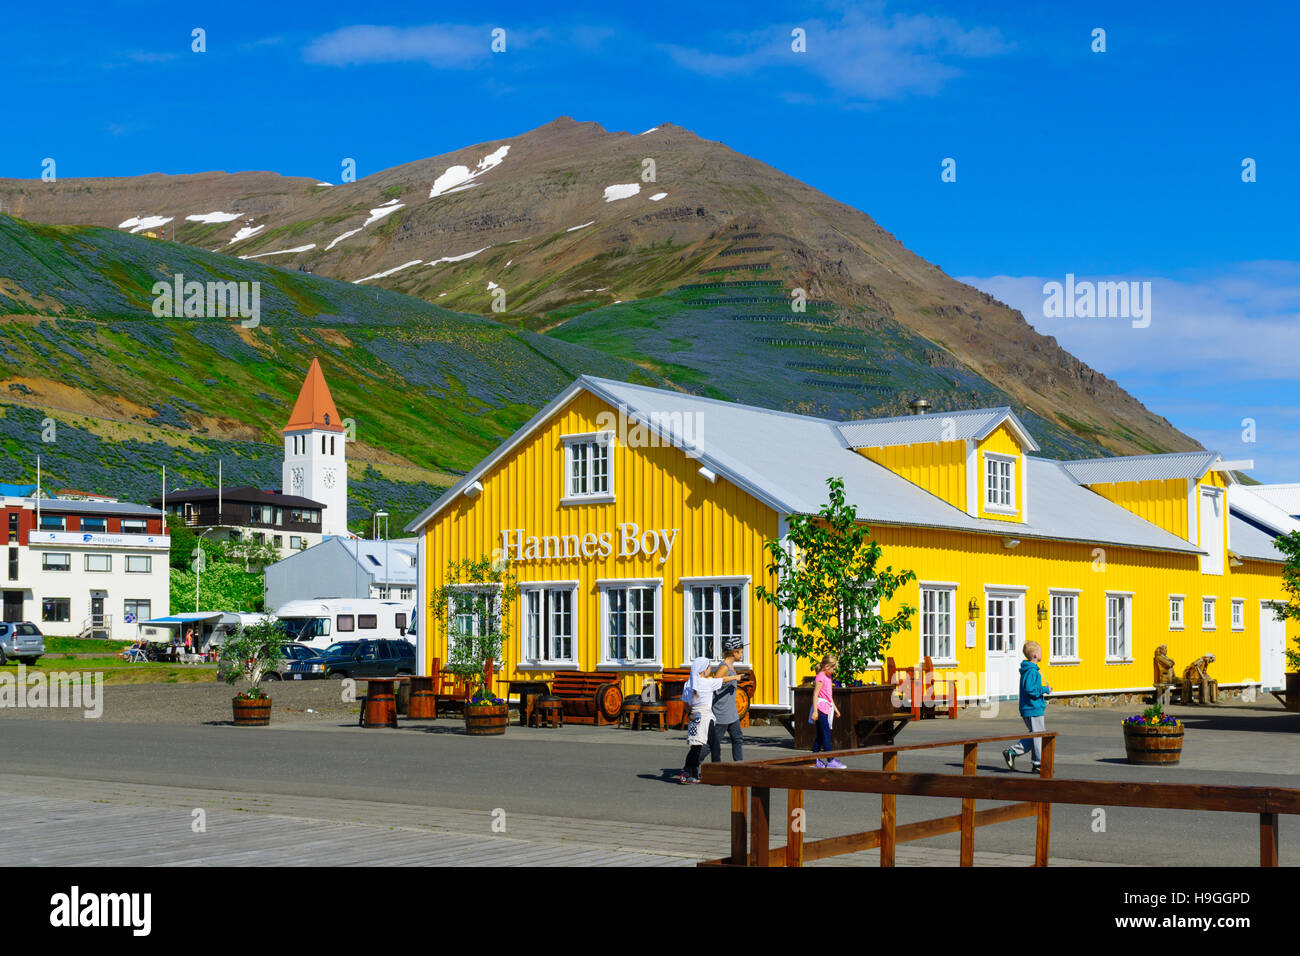 Siglufjörður Affitto, Islanda - 18 giugno 2016: vista sulla città, con la gente del posto e turisti, in Siglufjörður Affitto, il nord dell'Islanda Foto Stock